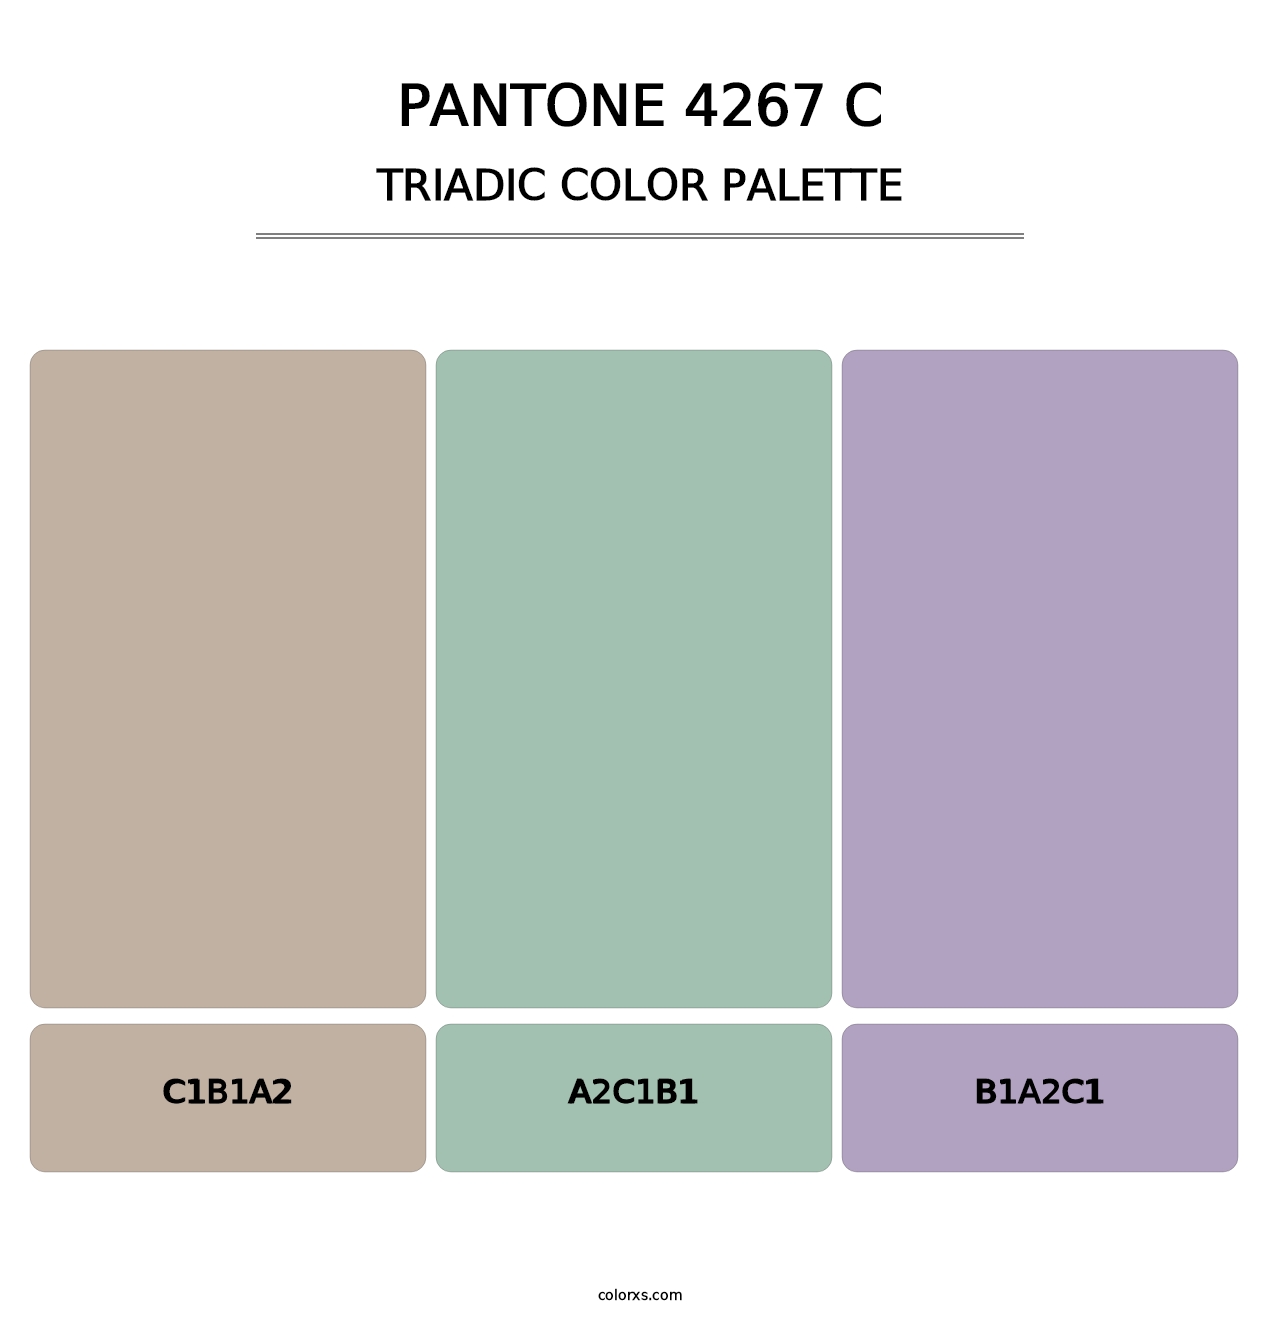 PANTONE 4267 C - Triadic Color Palette